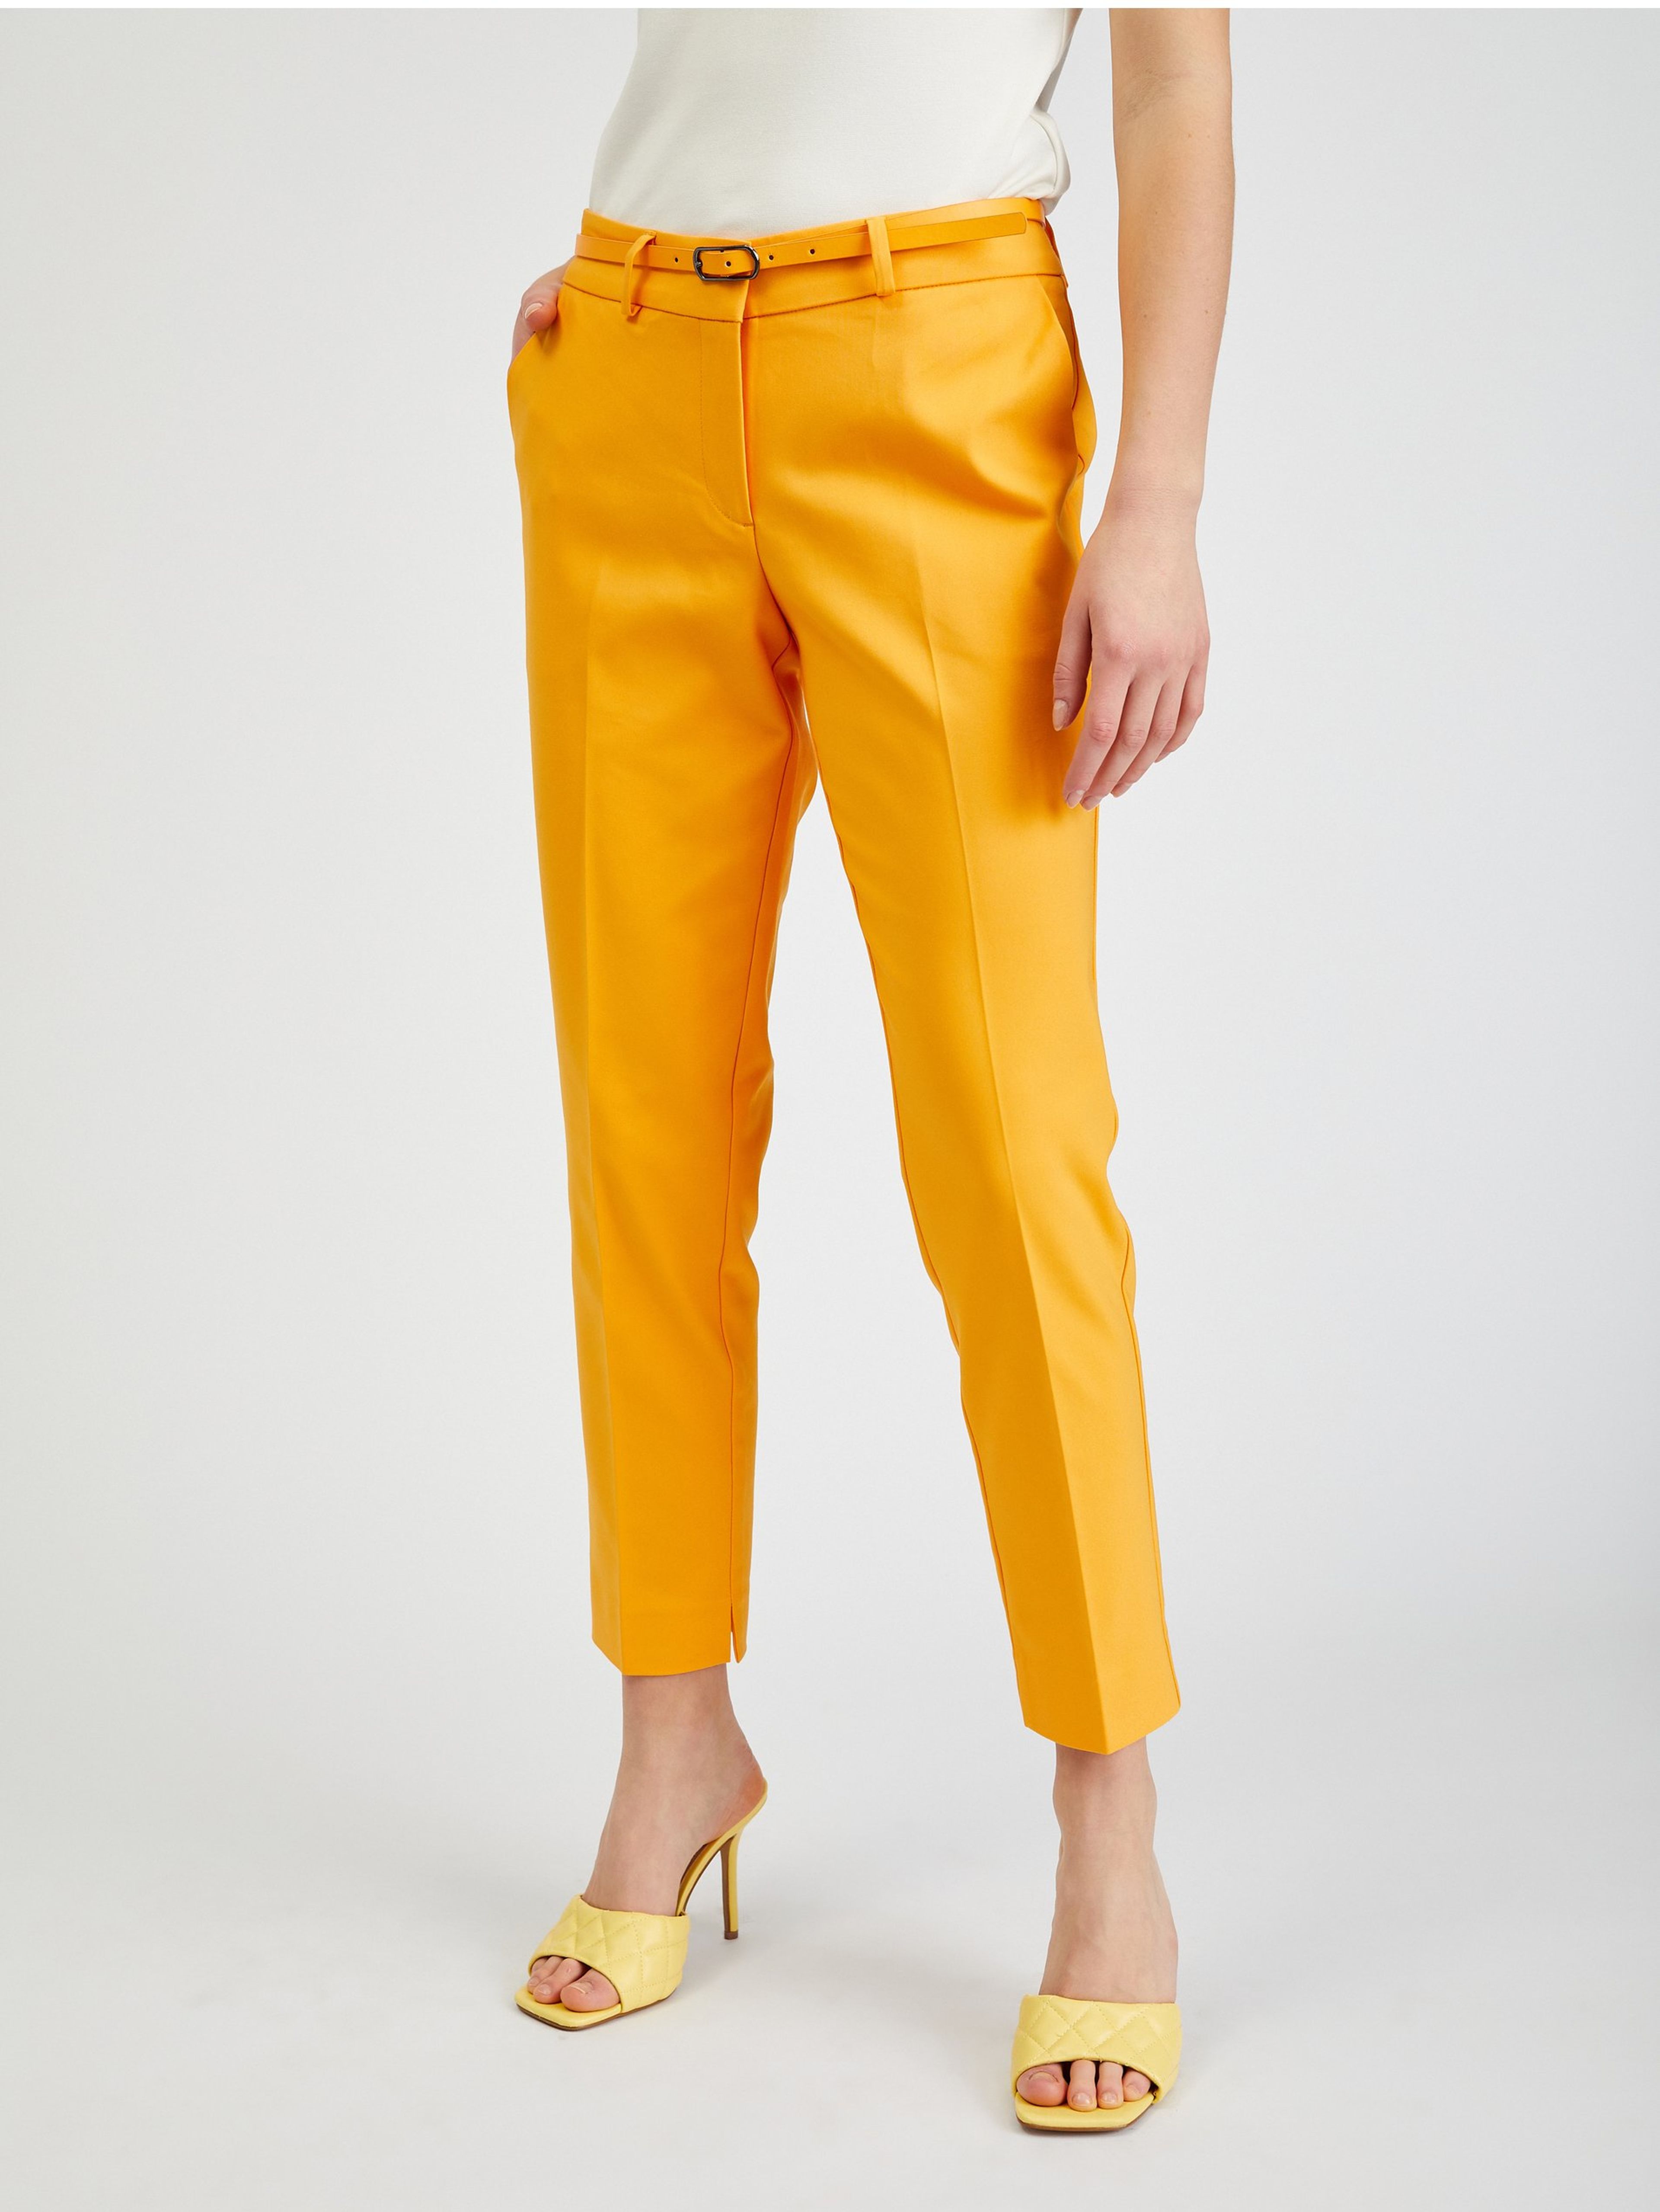 Oranžové dámské zkrácené kalhoty s páskem ORSAY